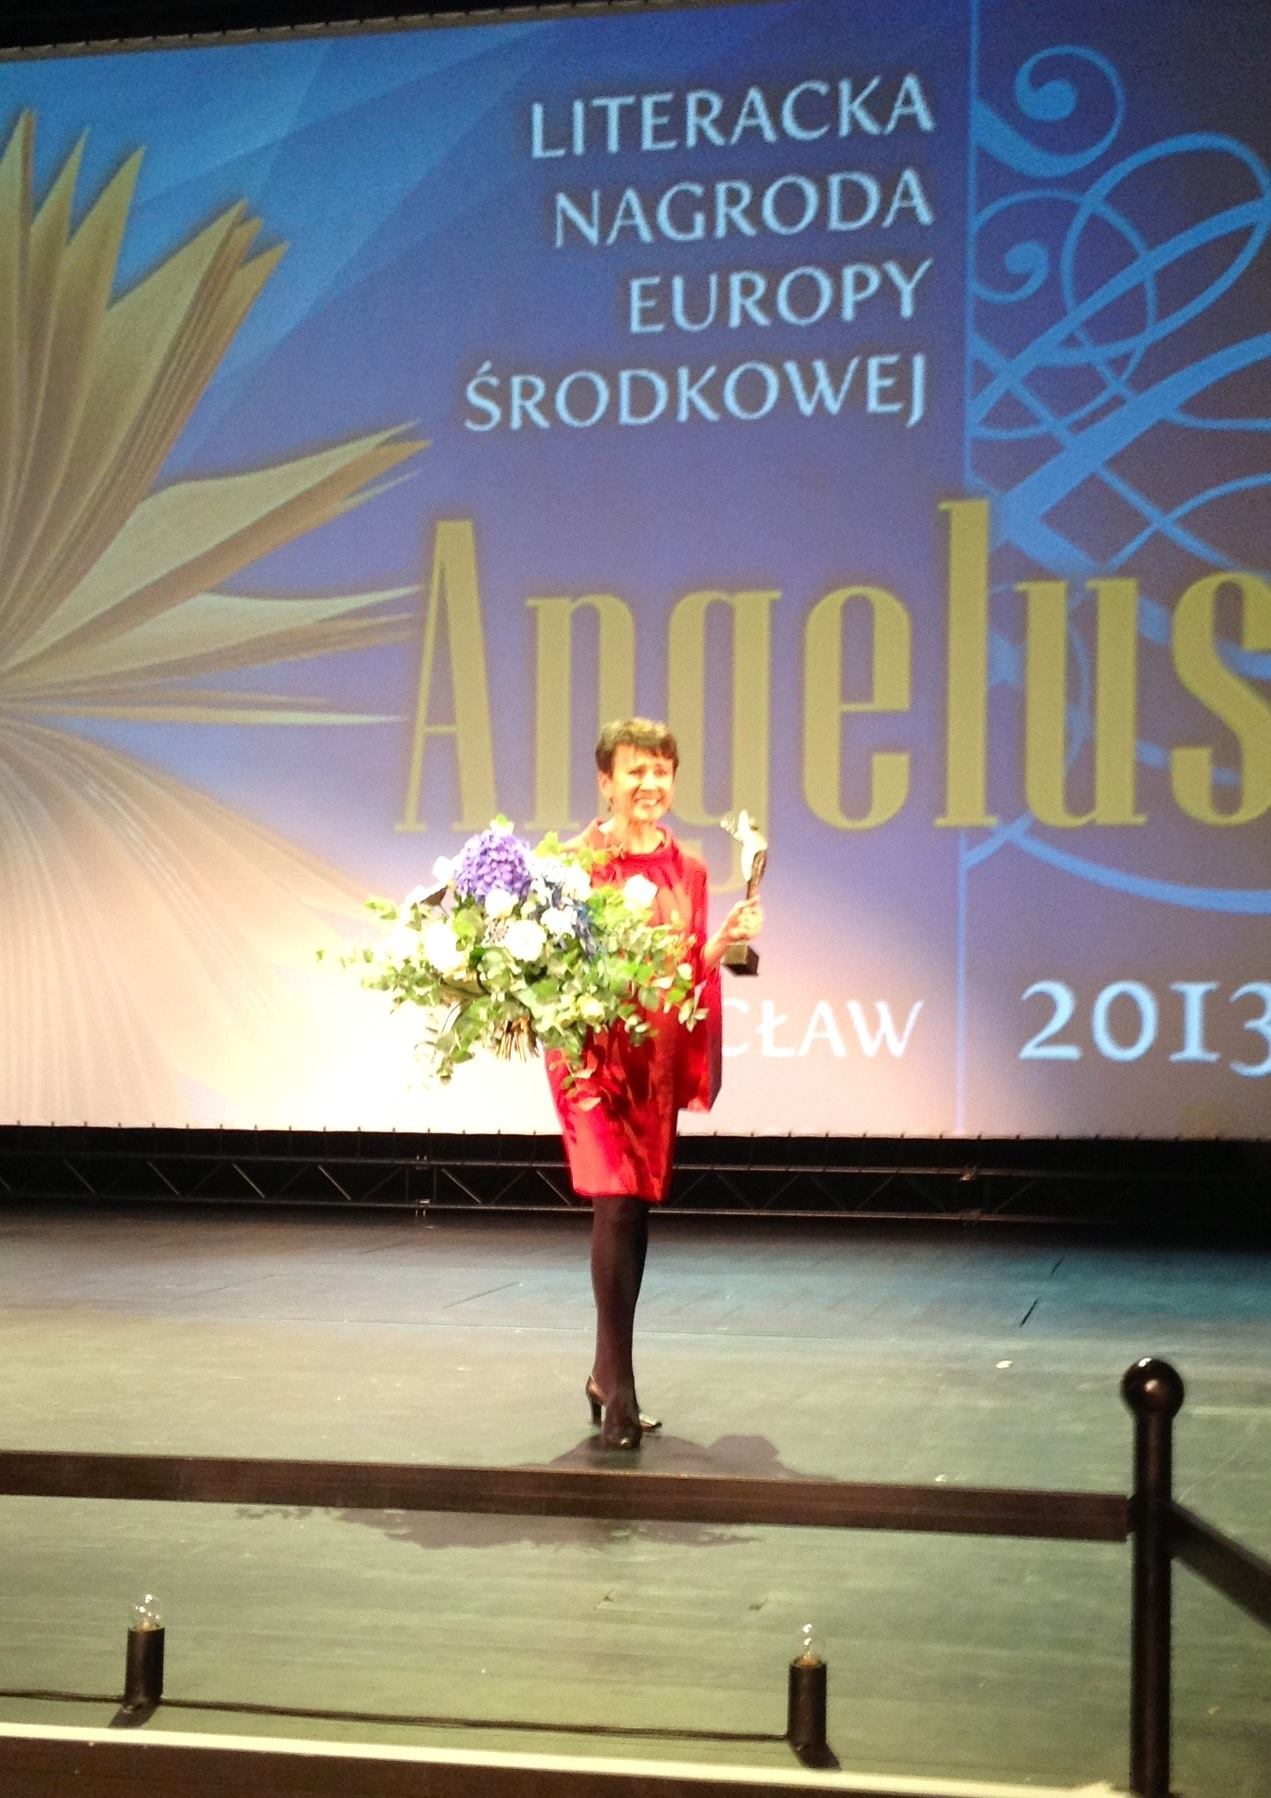 Літературну премію Центральної та Східної Європи 'Ангелус' отримала Оксана Забужко за 'Музей покинутих секретів'